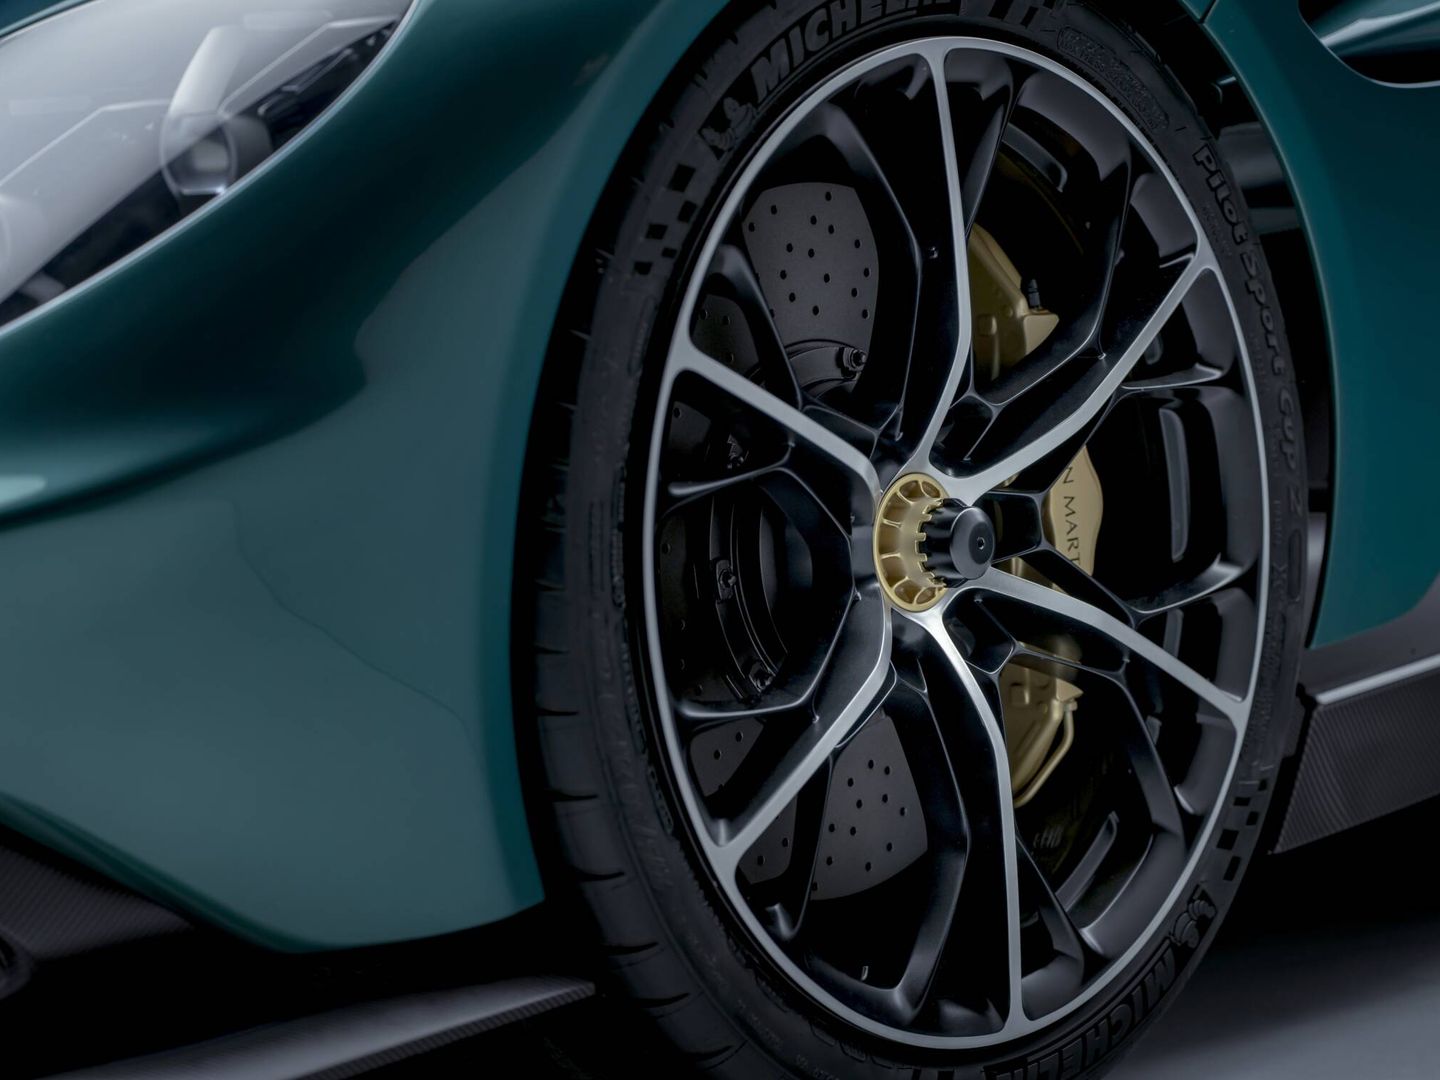 Los frenos son cerámicos y los neumáticos han sido desarrollados específicamente por Michelin para el Valhalla.